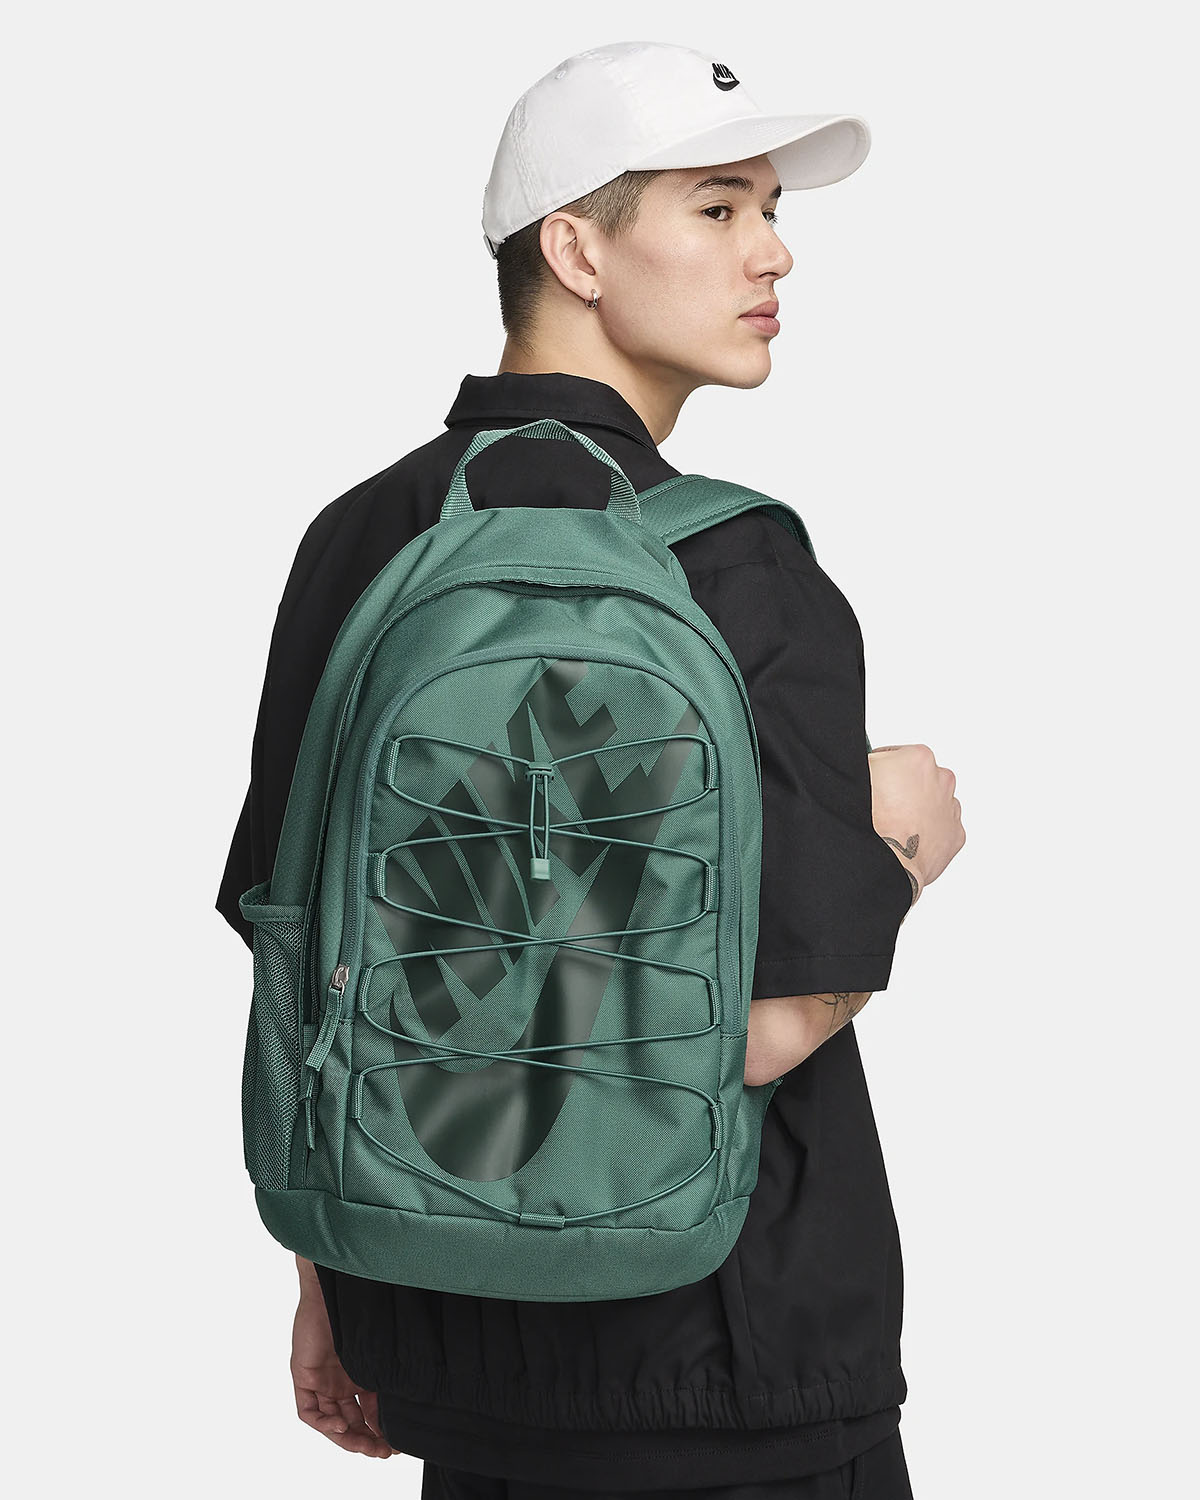 Nike Hayward Backpack Bicoastal